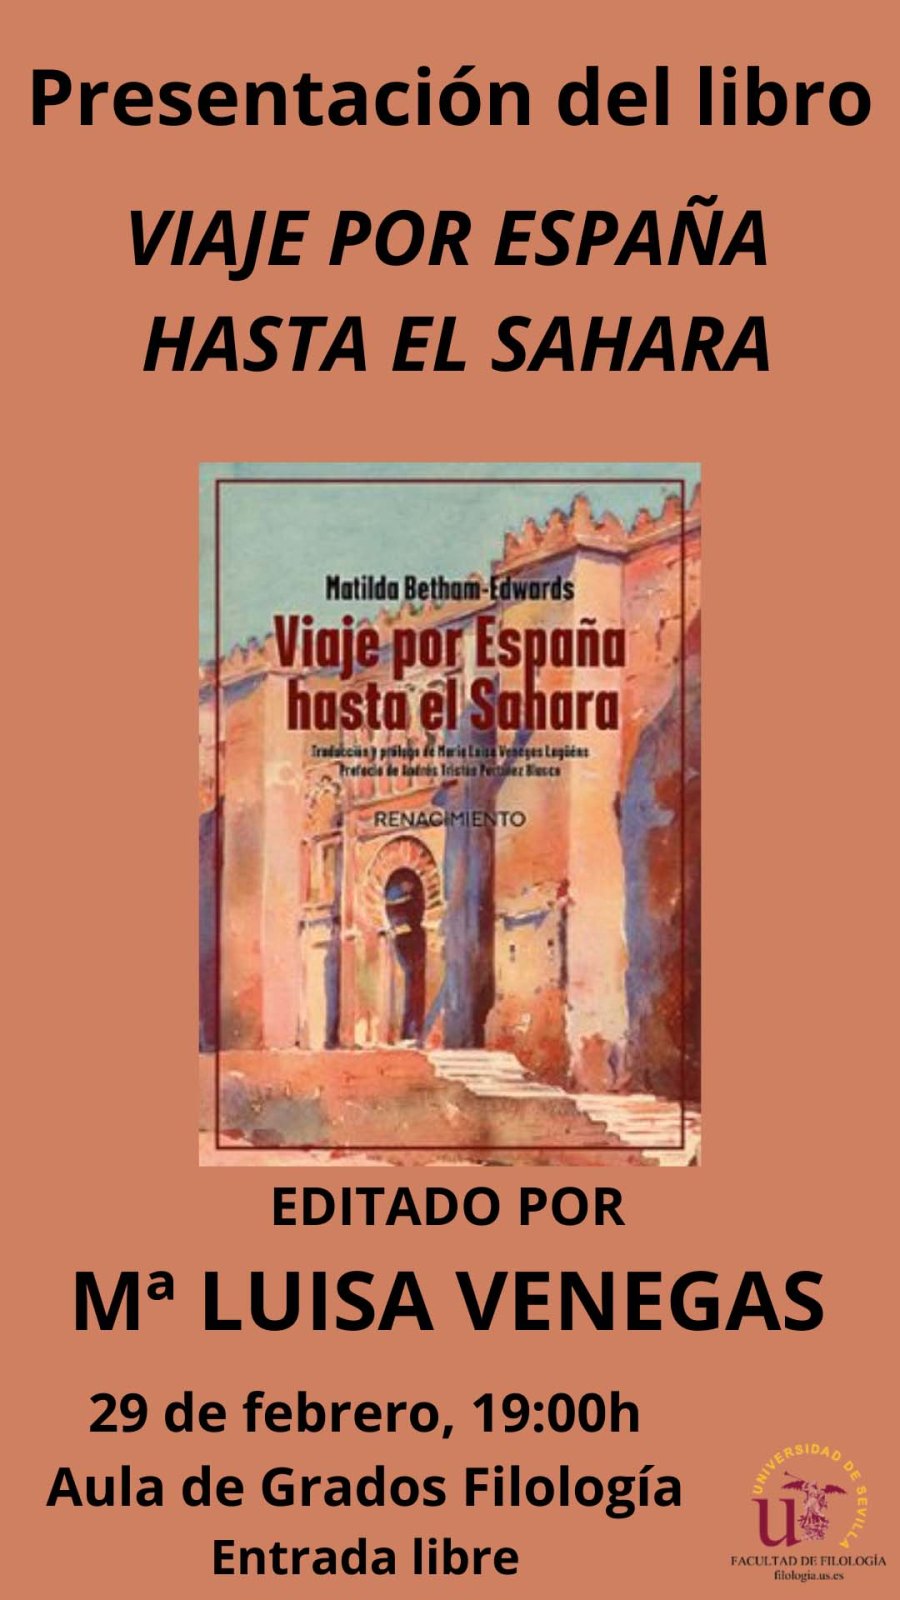 PRESENTACIÓN DE “VIAJE POR ESPAÑA HASTA EL SAHARA” DE MATILDA BETHAM-EDWARDS CON LA TRADUCTORA MARÍA LUISA VENEGAS